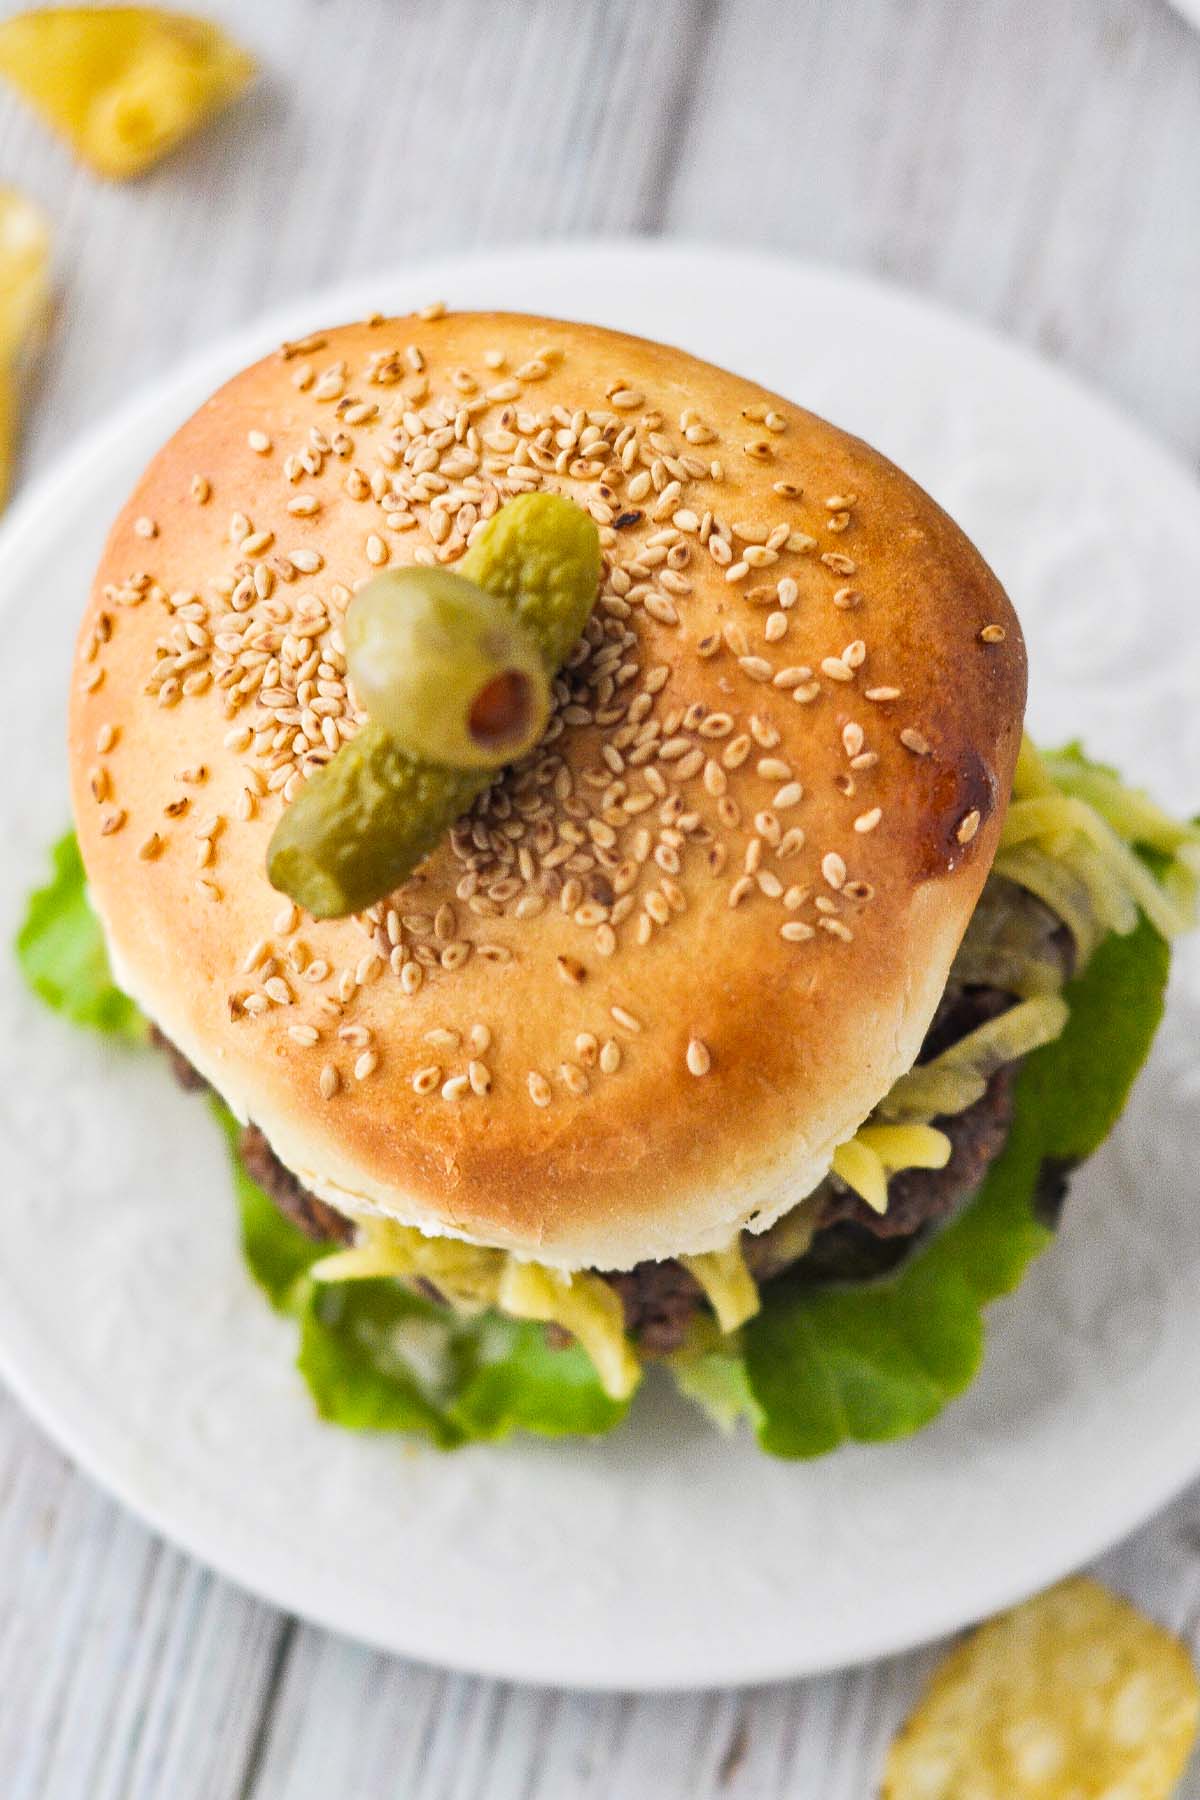 https://lizzylovesfood.com/wp-content/uploads/2023/04/Sesame-Seed-Bun-Burger-5.jpg